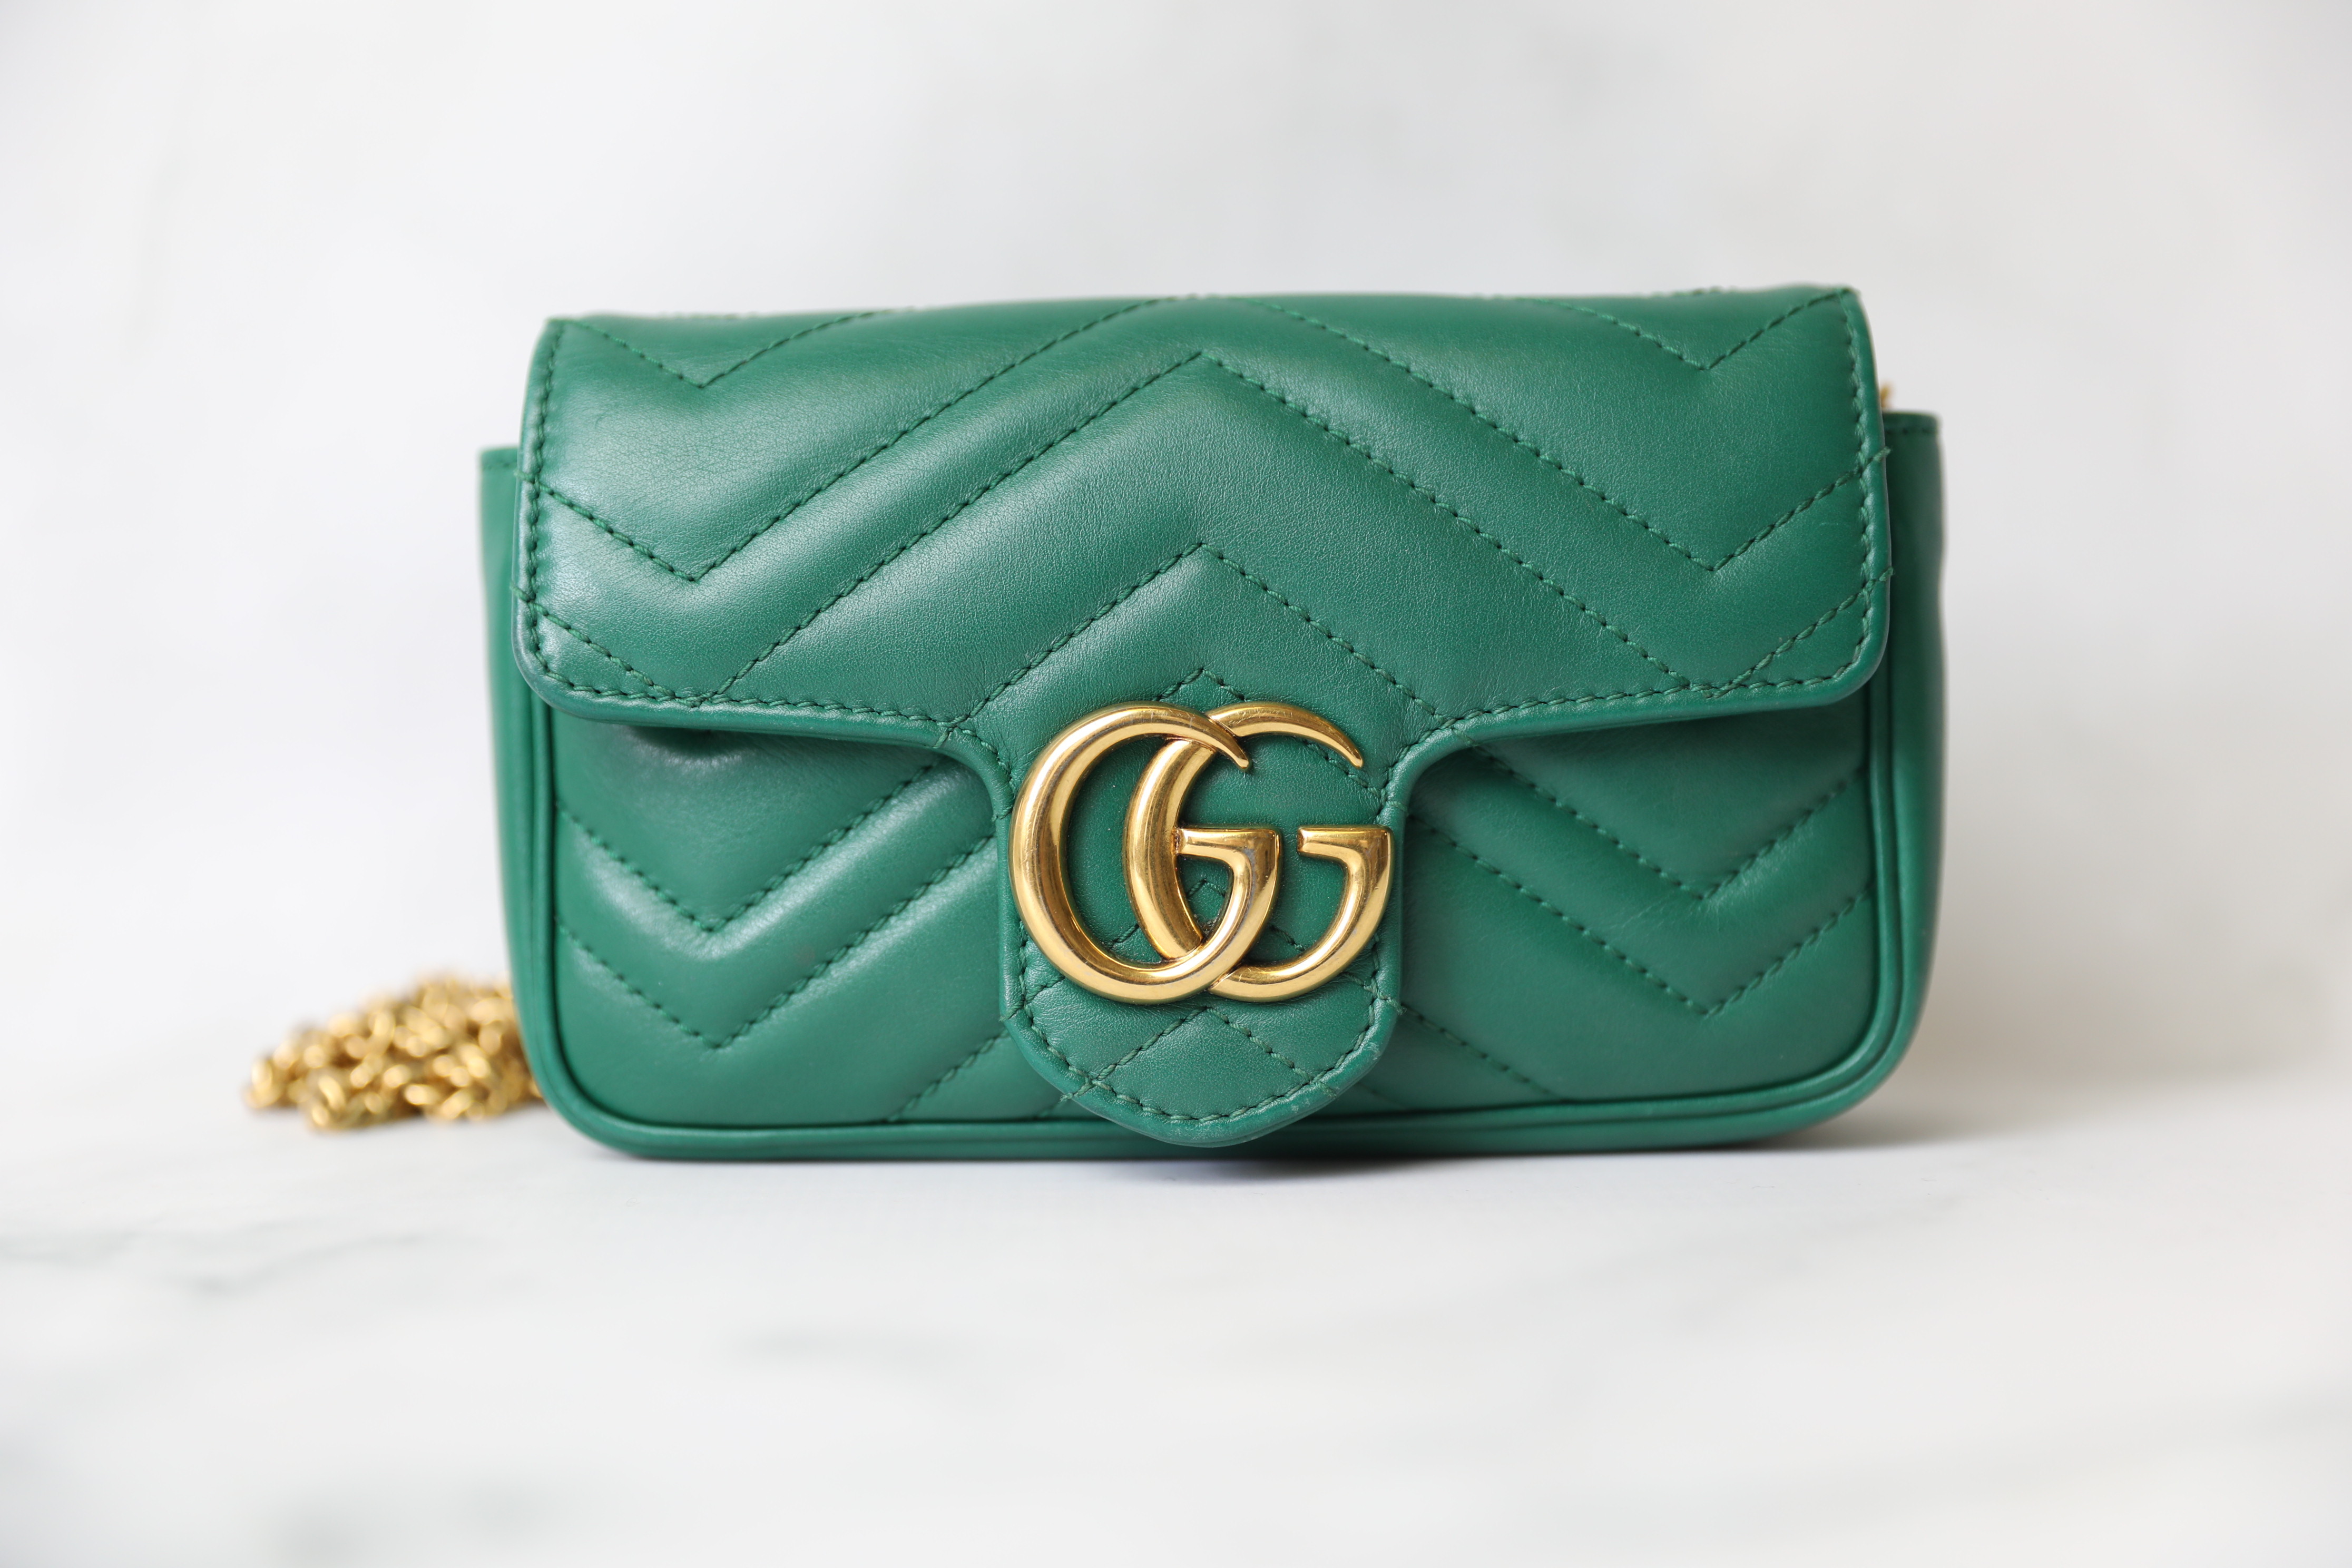 Gucci GG Marmont Matelasse Super Mini Emerald Green in Calfskin